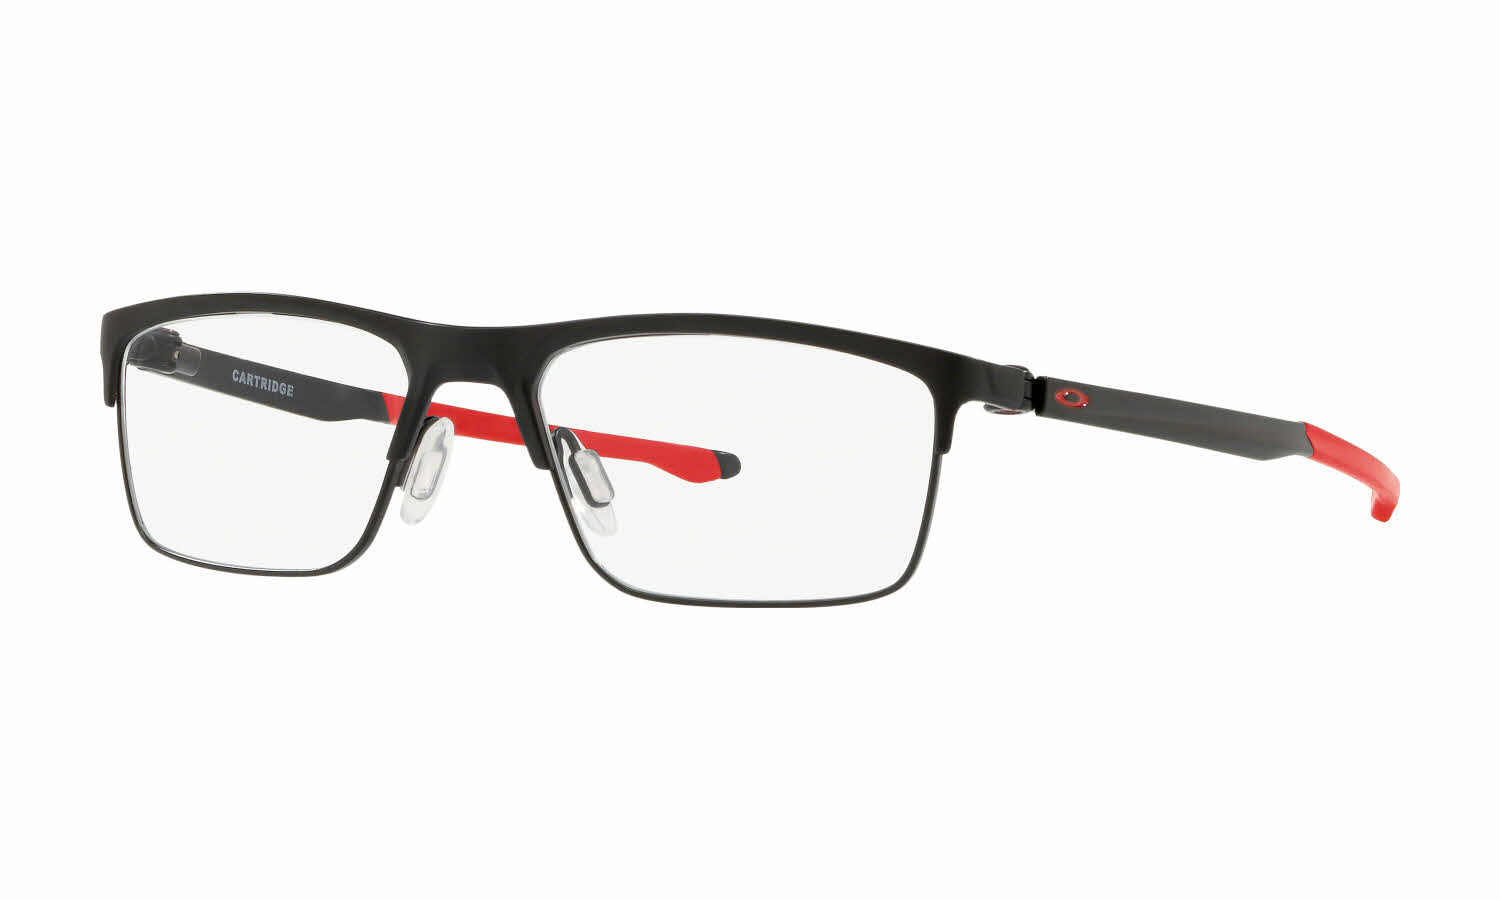 Oakley Cartridge Eyeglasses